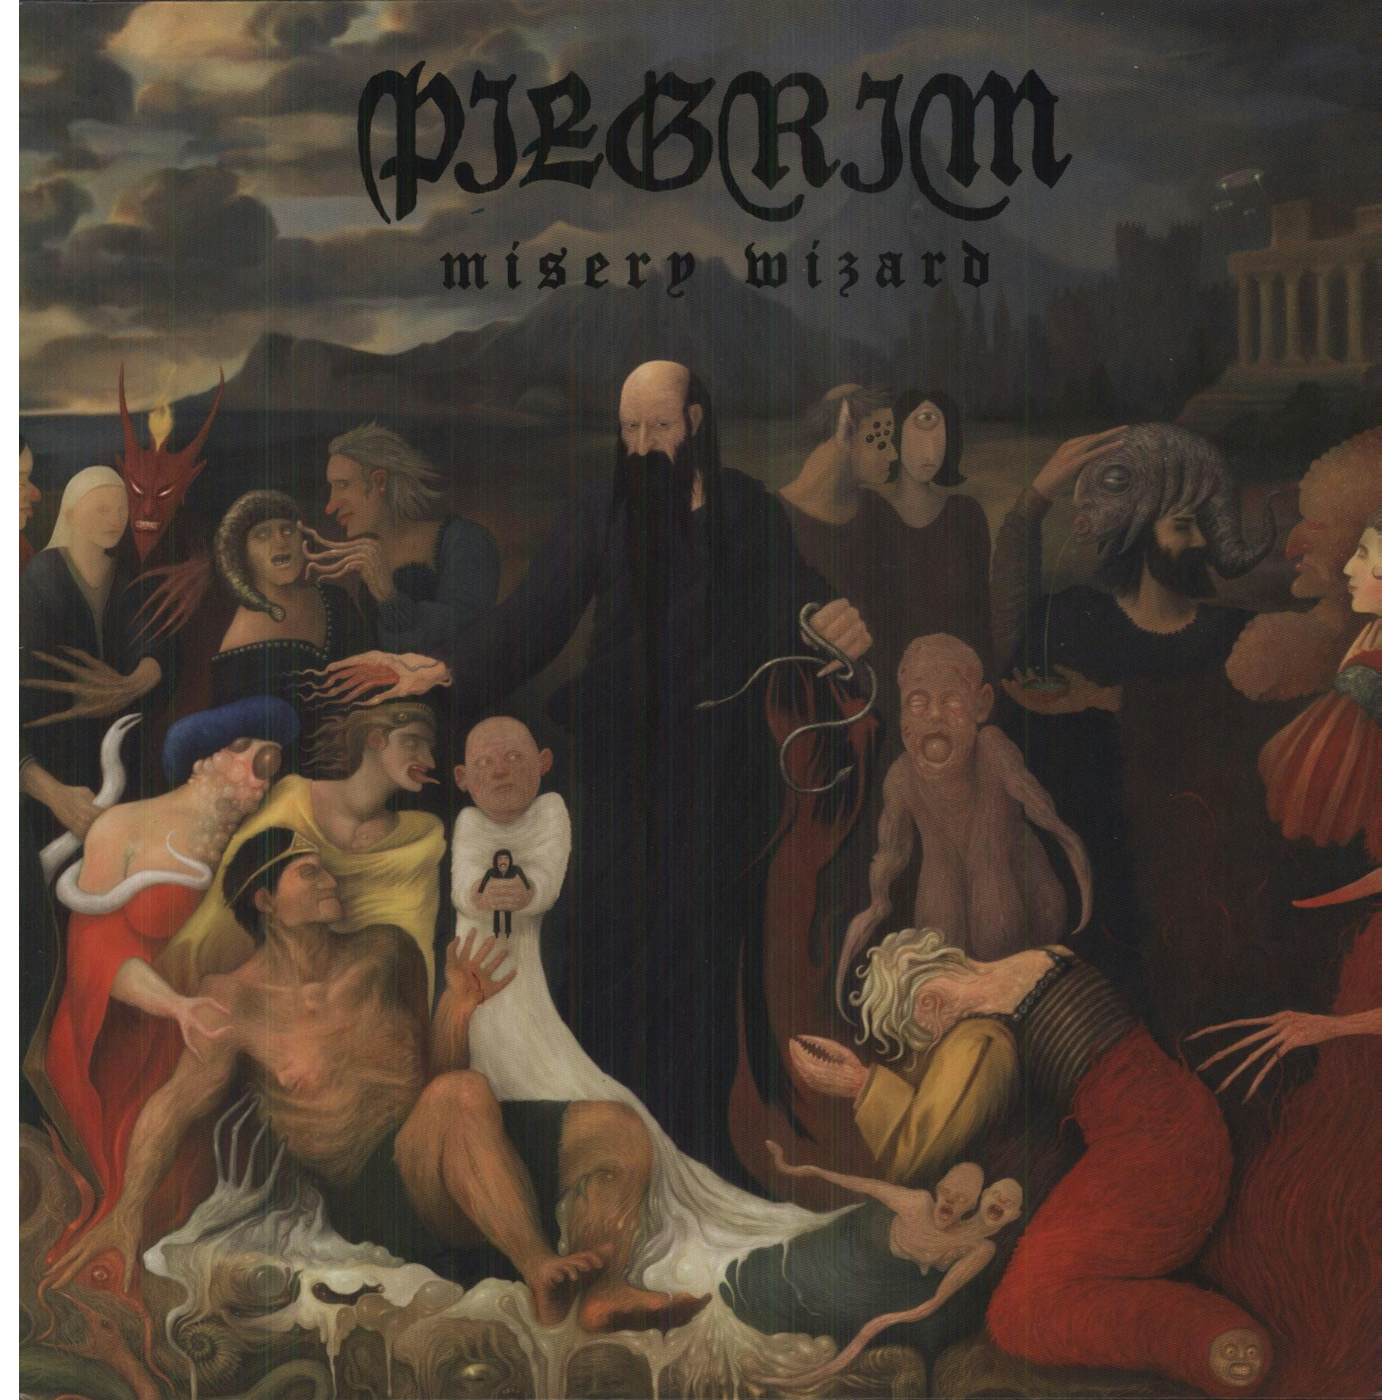 The Pilgrim Misery Wizard Vinyl Record